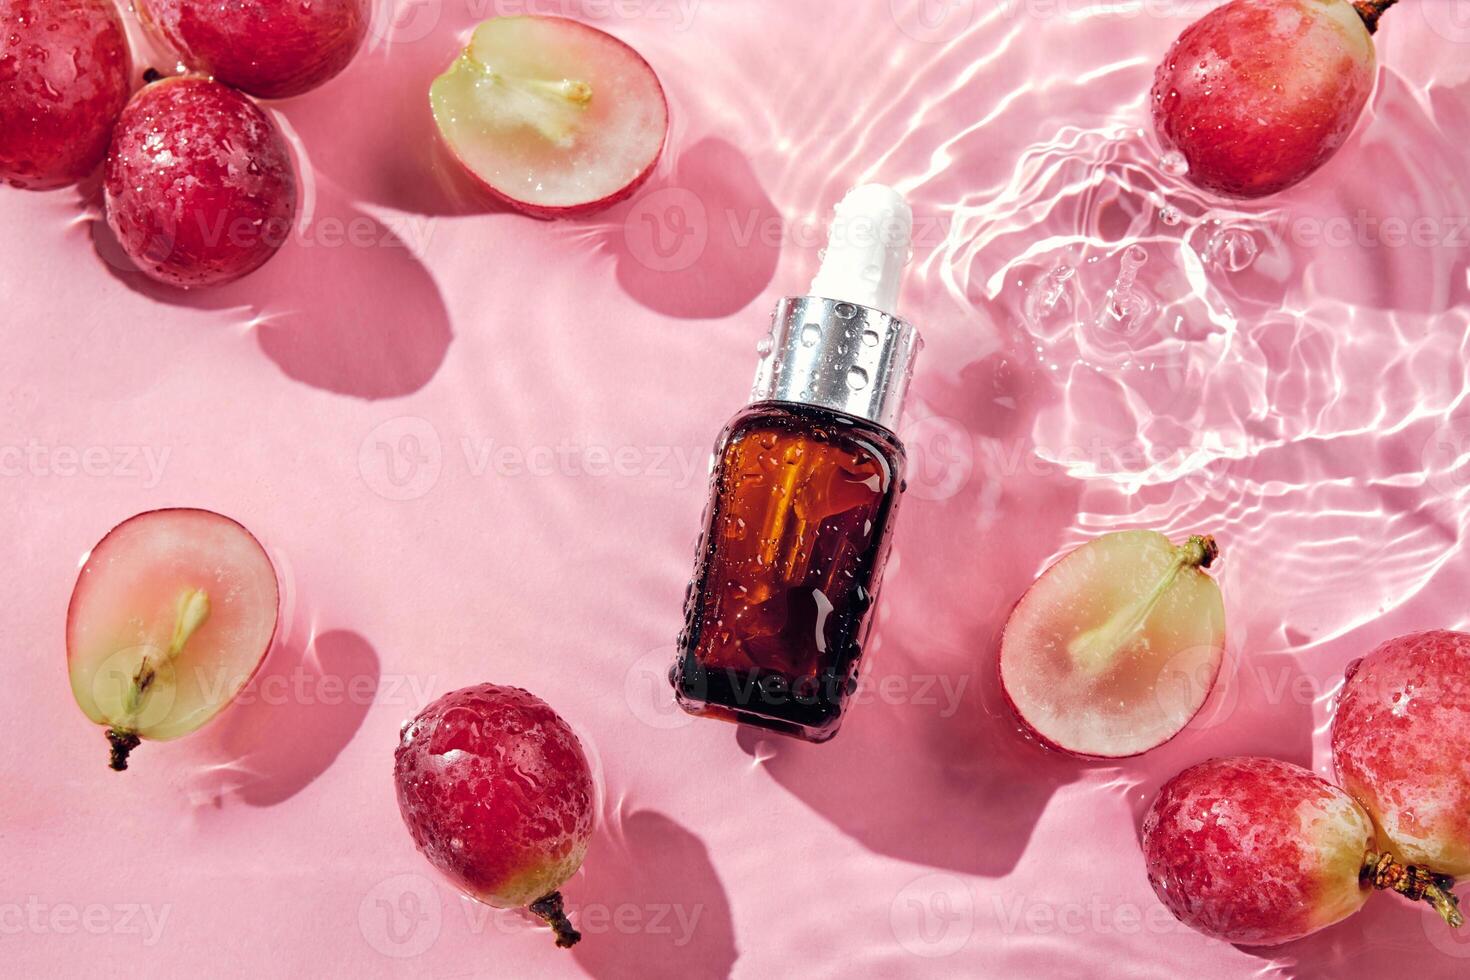 organisk kosmetika med druva utsäde olja och ört- Ingredienser. noll avfall vinframställning. hudvård kosmetisk produkt, vindruvor och vatten stänk på rosa bakgrund foto